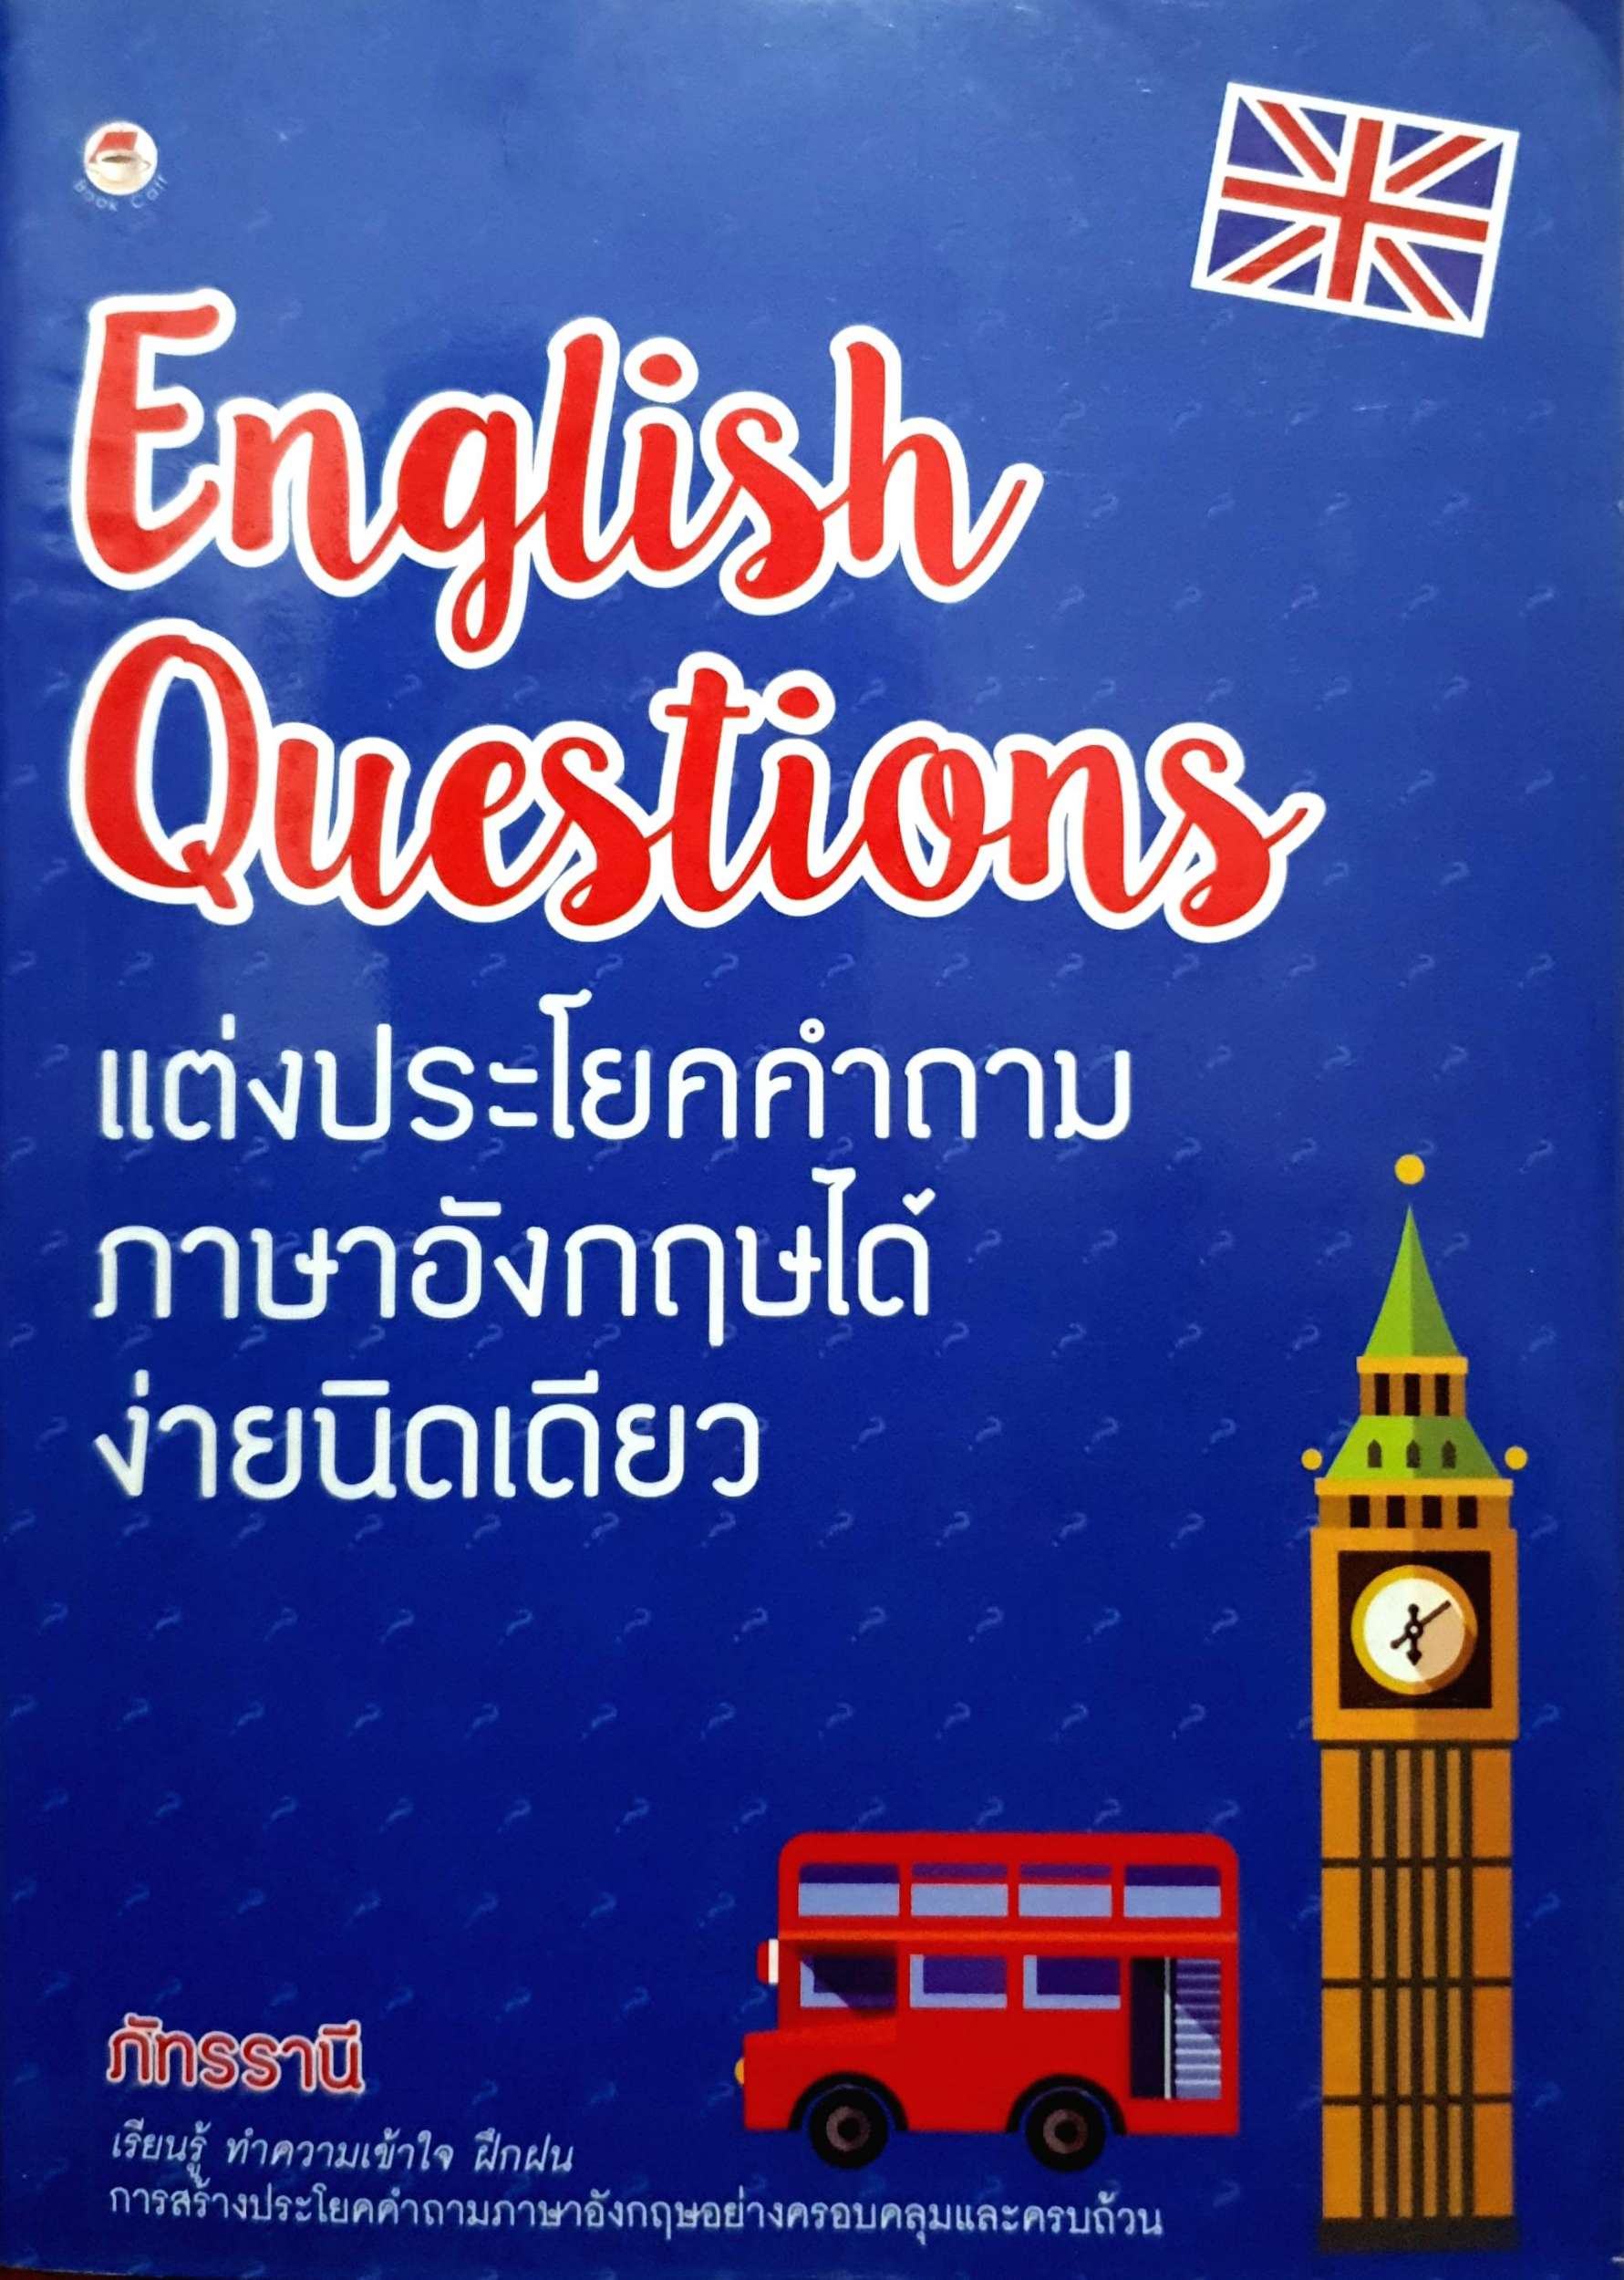 English Questions แต่งประโยคคำถามภาษาอังกฤษ ได้ง่ายนิดเดียว ภัทรรานี -  Bookpanich : Inspired By Lnwshop.Com